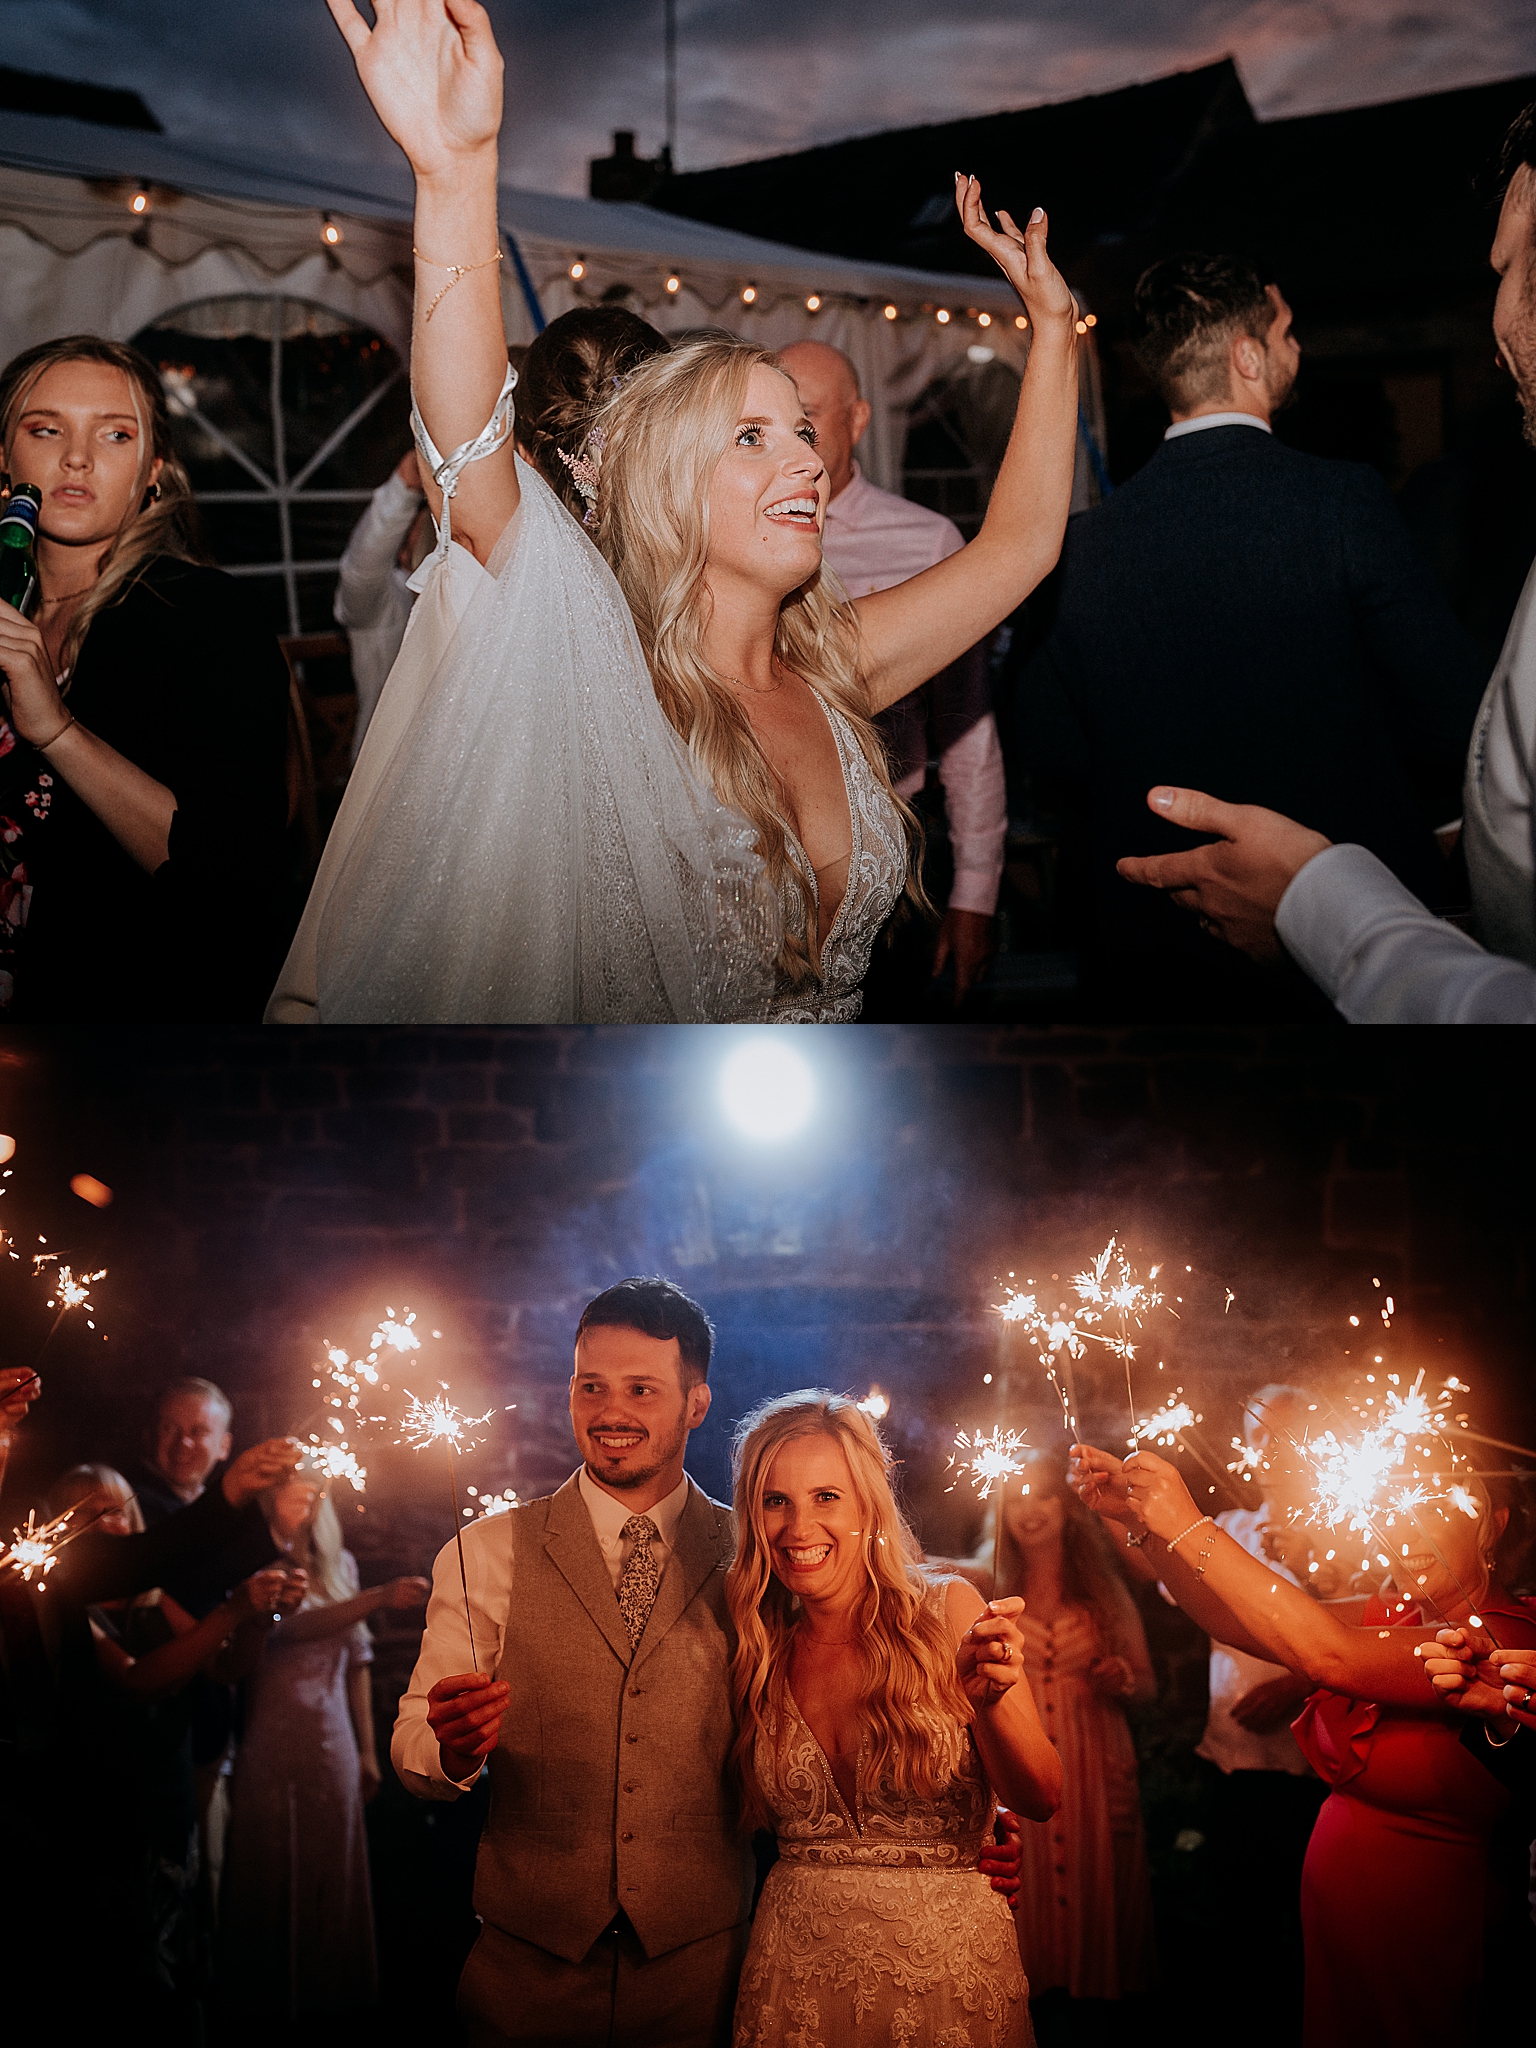 Creative Wedding Photography - Midlands Wedding Photographer